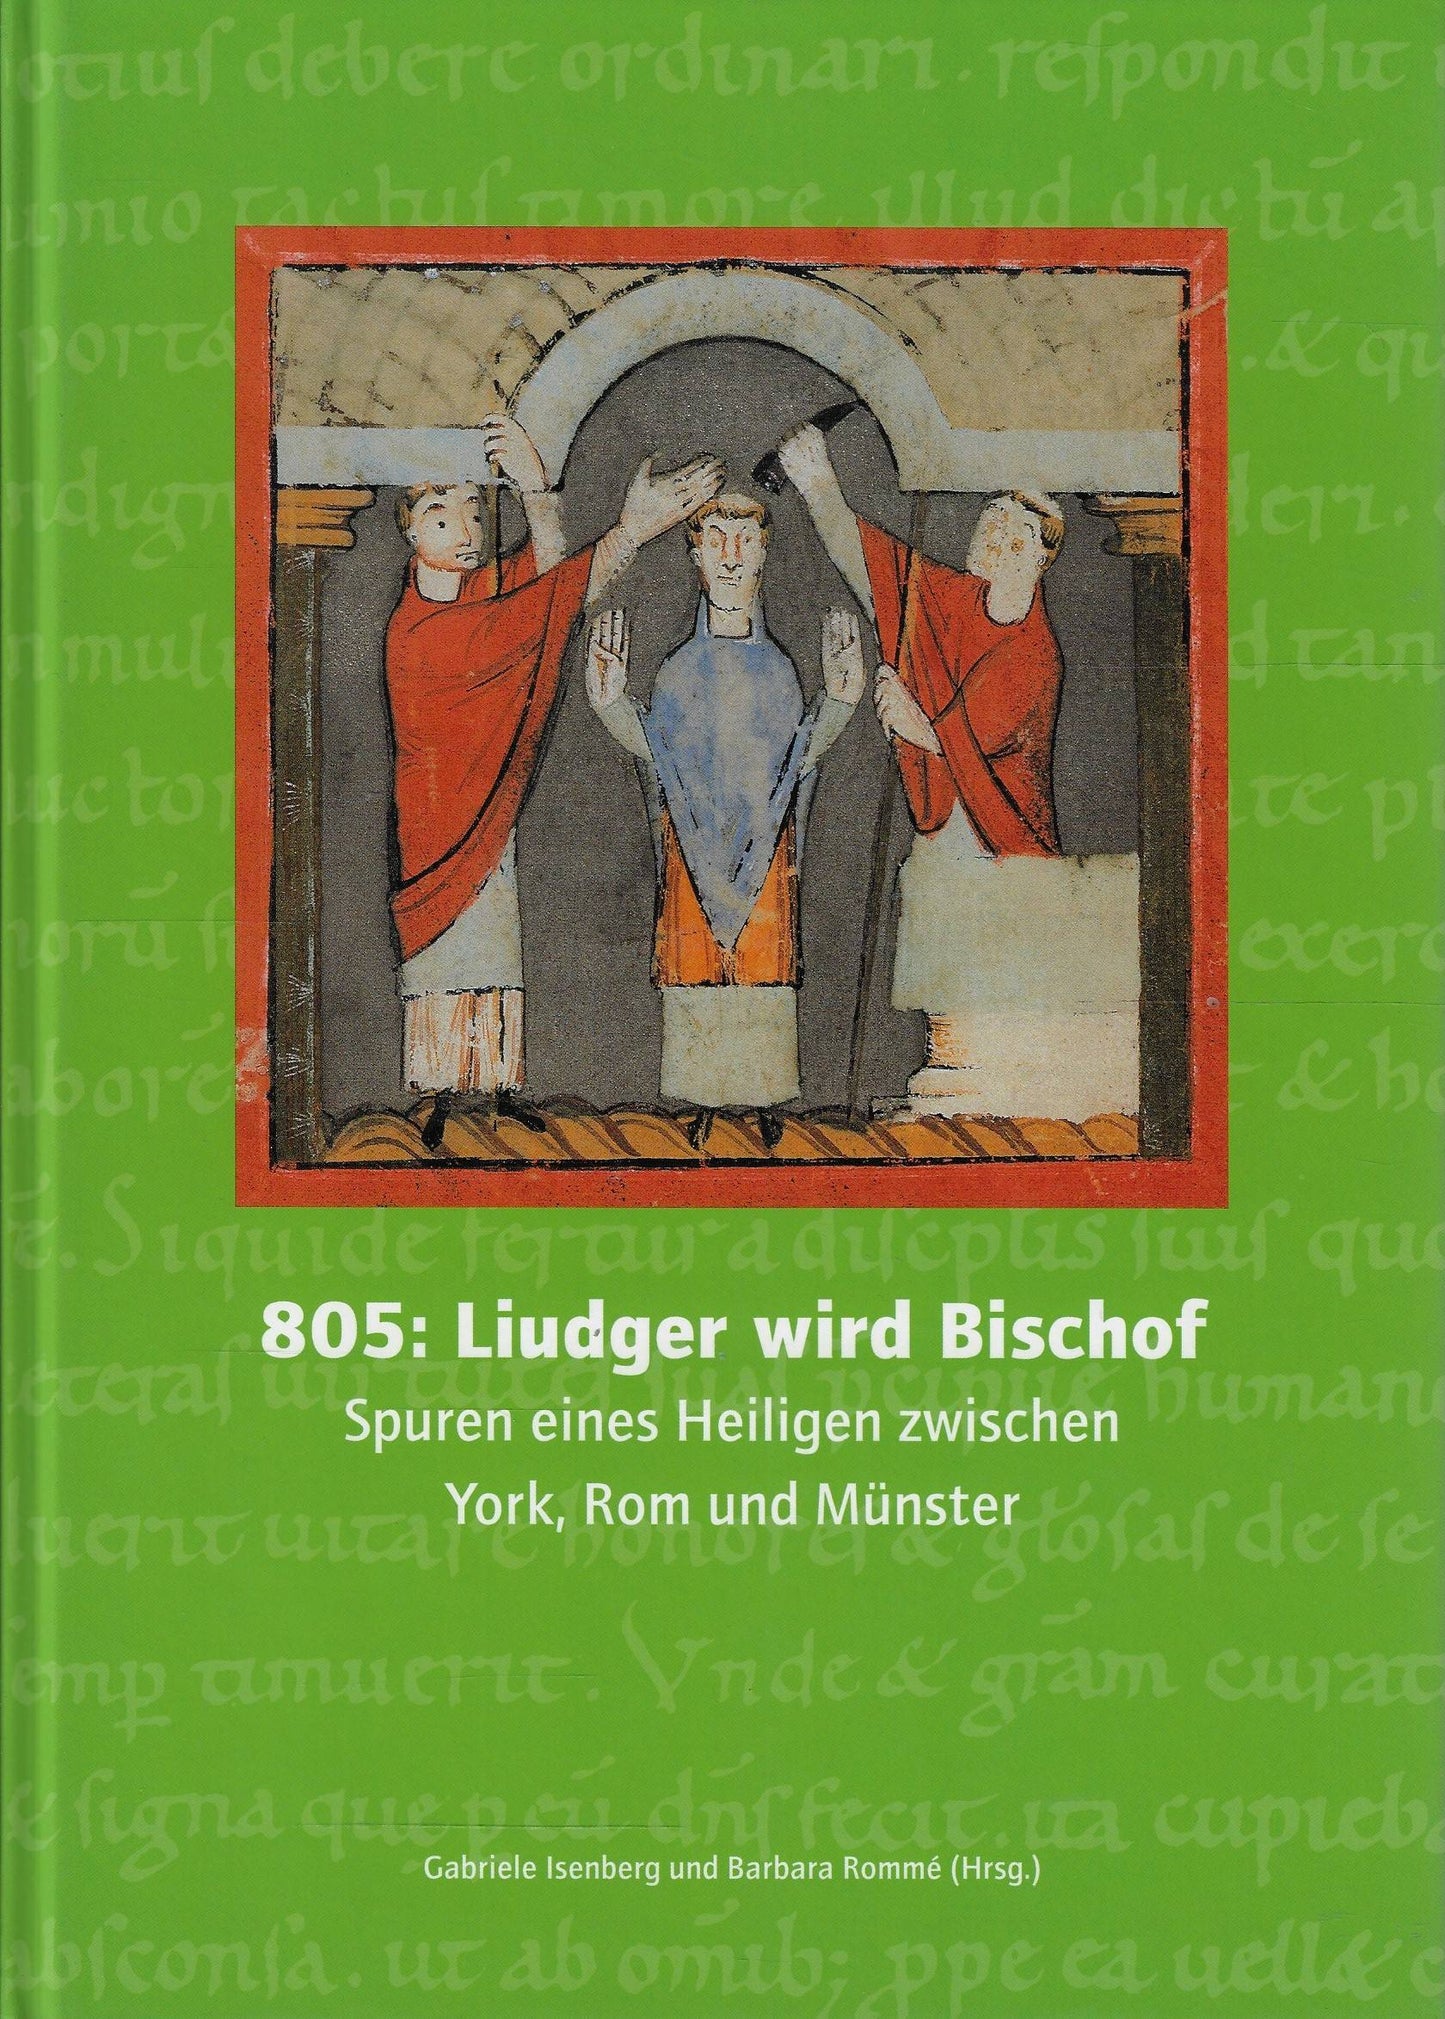 805: Liudger wird Bischof / Spuren eines Heiligen zwischen York, Rom und Munster